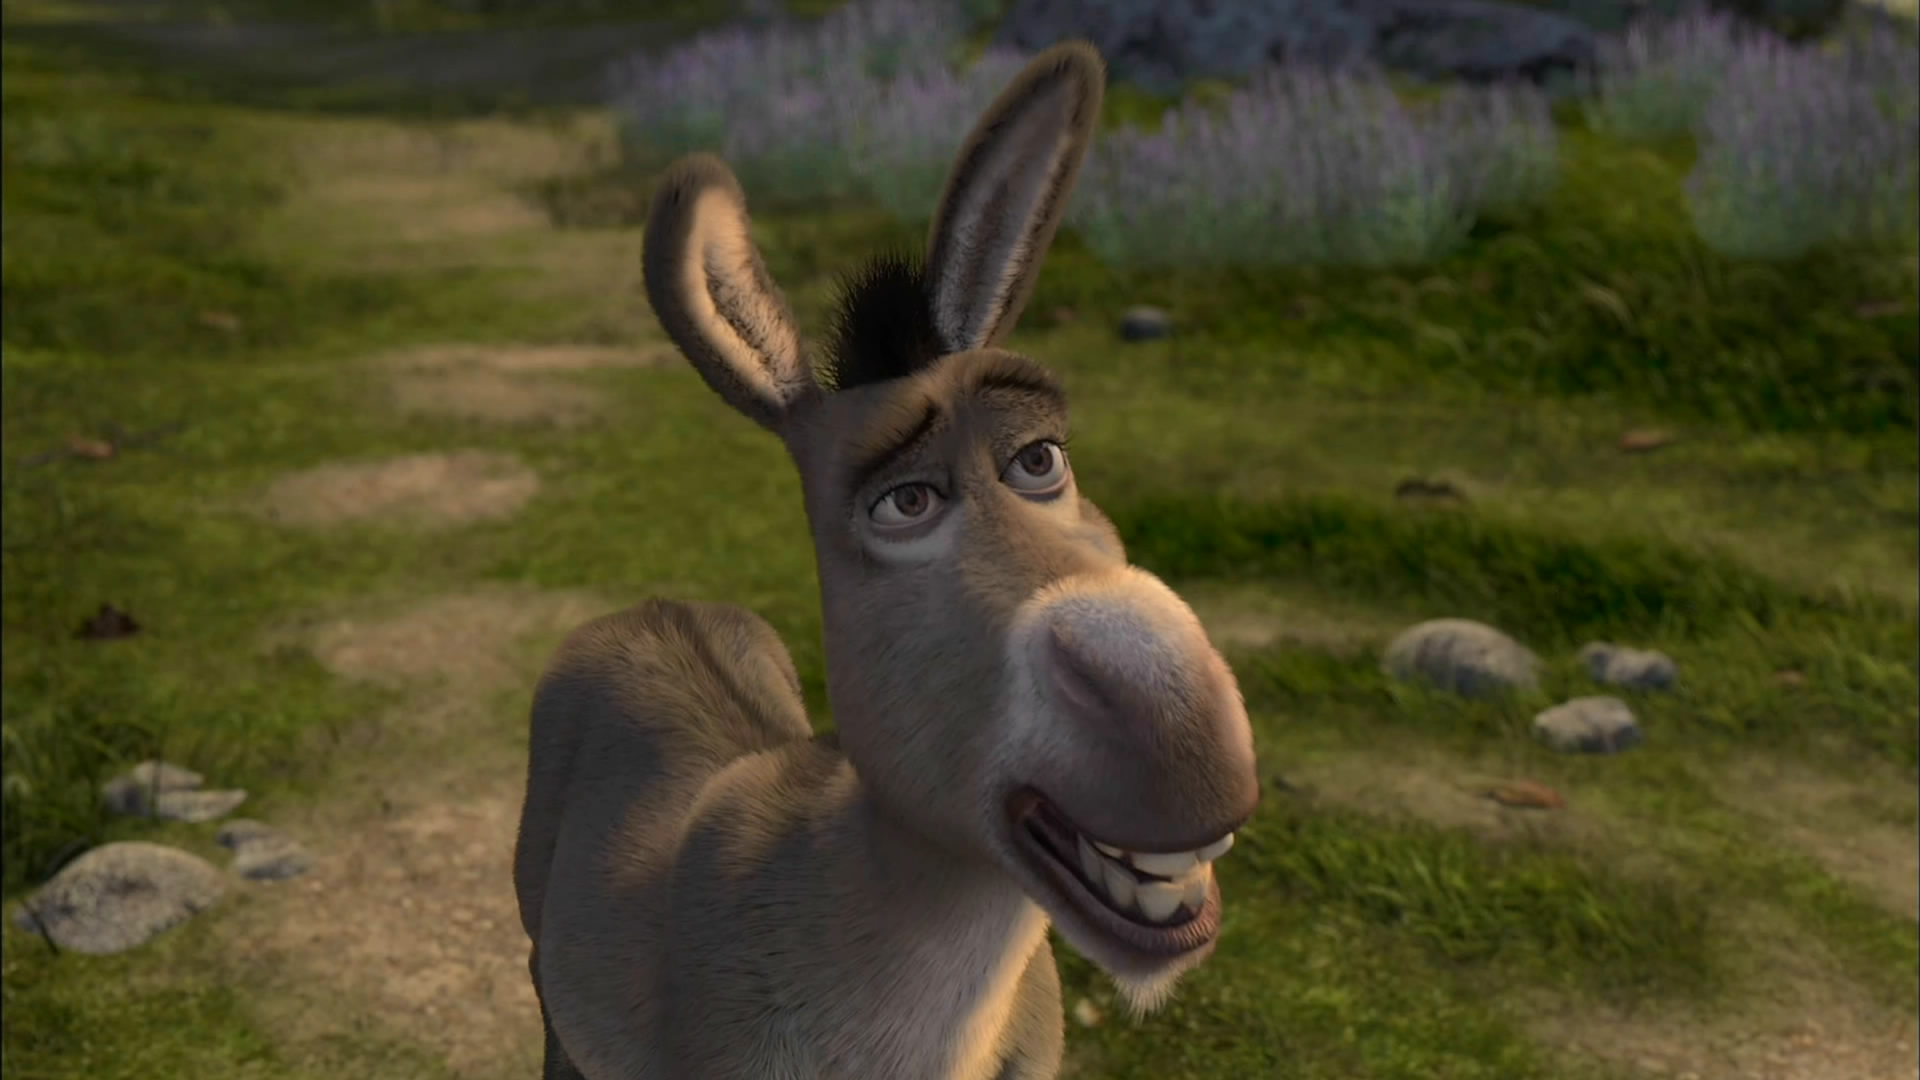 Donkey in a field